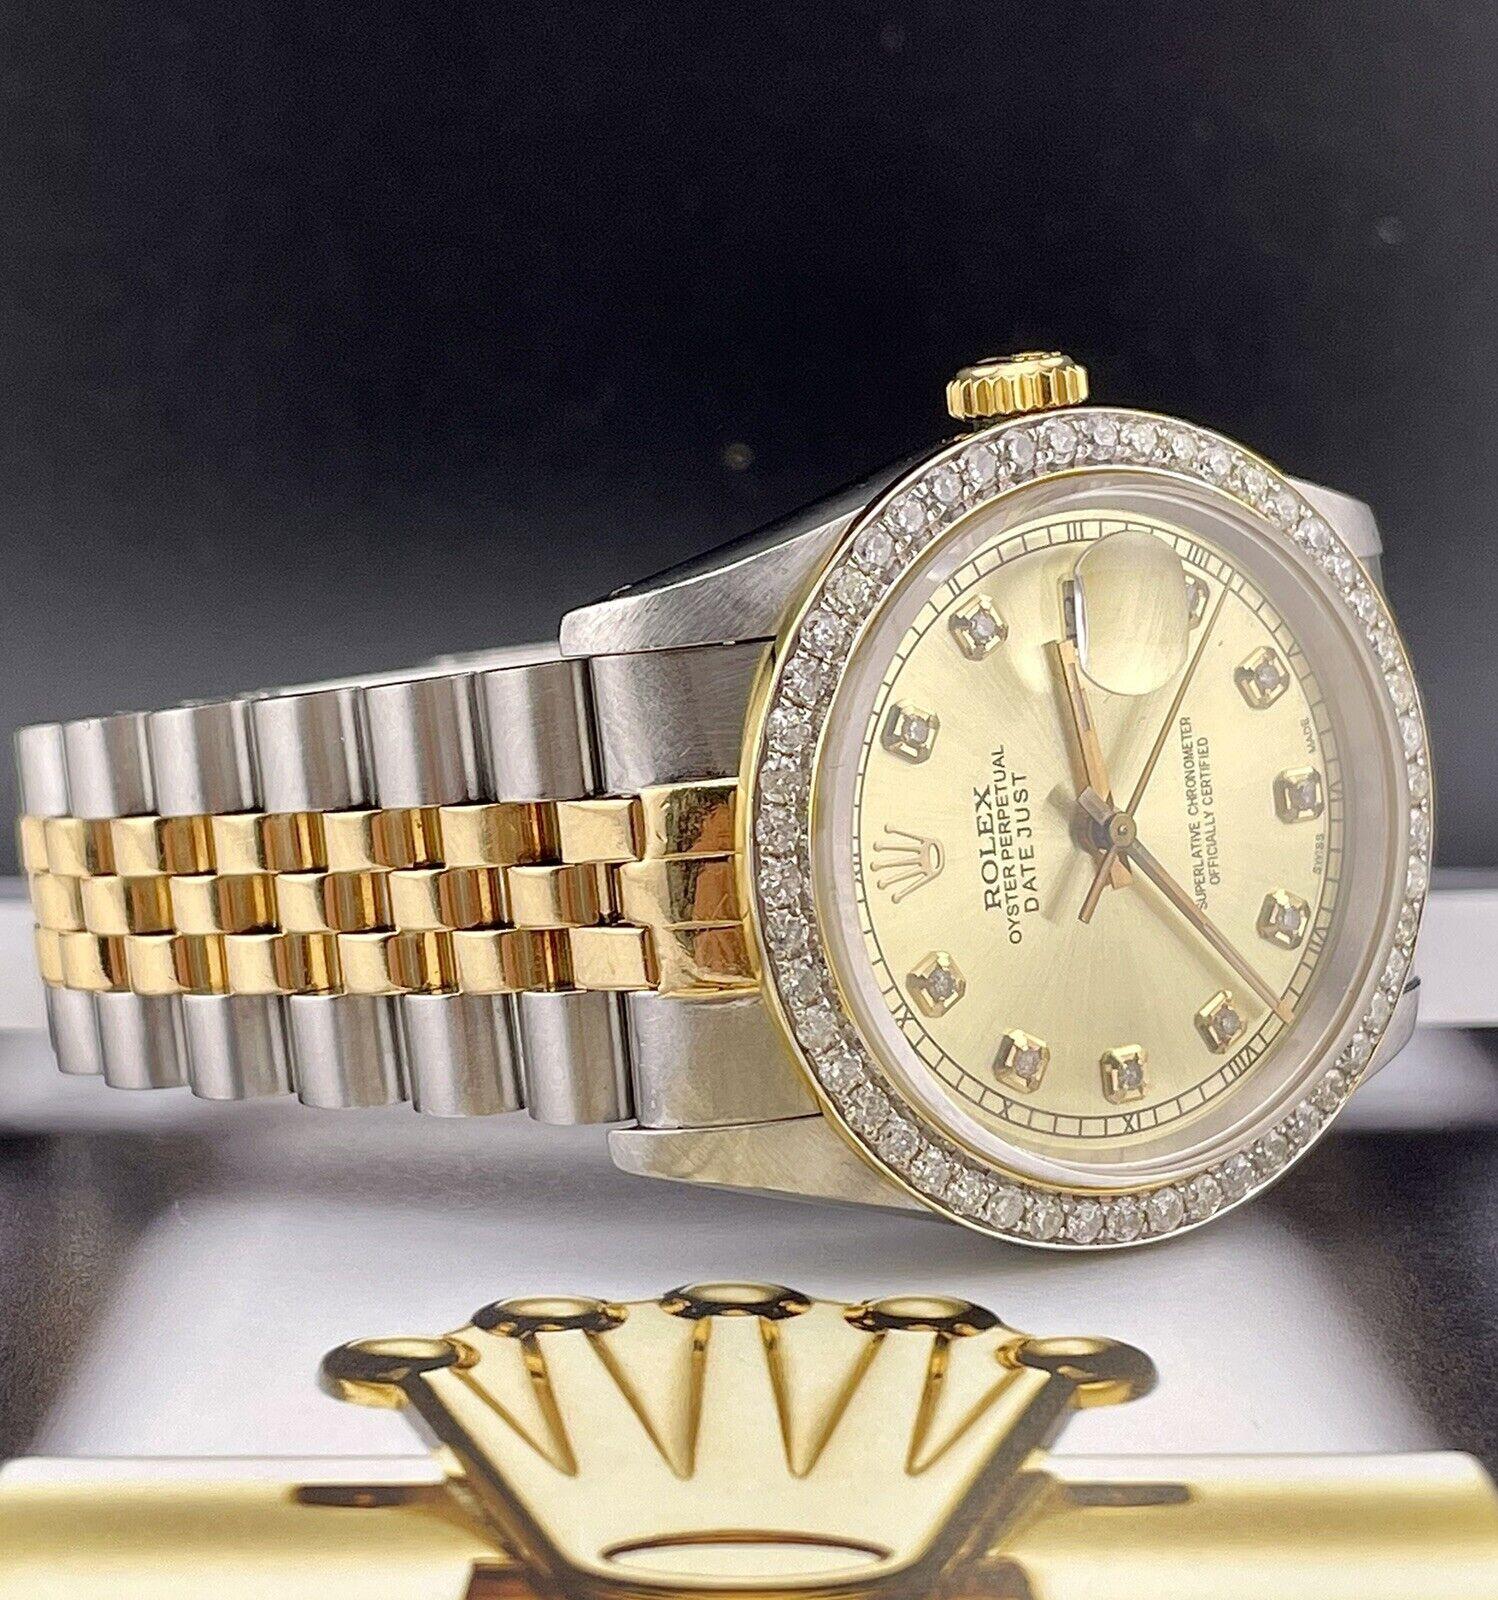 Dies ist eine Rolex Datejust 36mm mit Jubiläumsband. Diese Uhr ist 2Tone, was bedeutet, dass sie sowohl aus 18k Gelbgold als auch aus Edelstahl besteht. Außerdem haben wir auf der Lünette und dem Zifferblatt SI-Diamanten im Wert von 1,75 ct